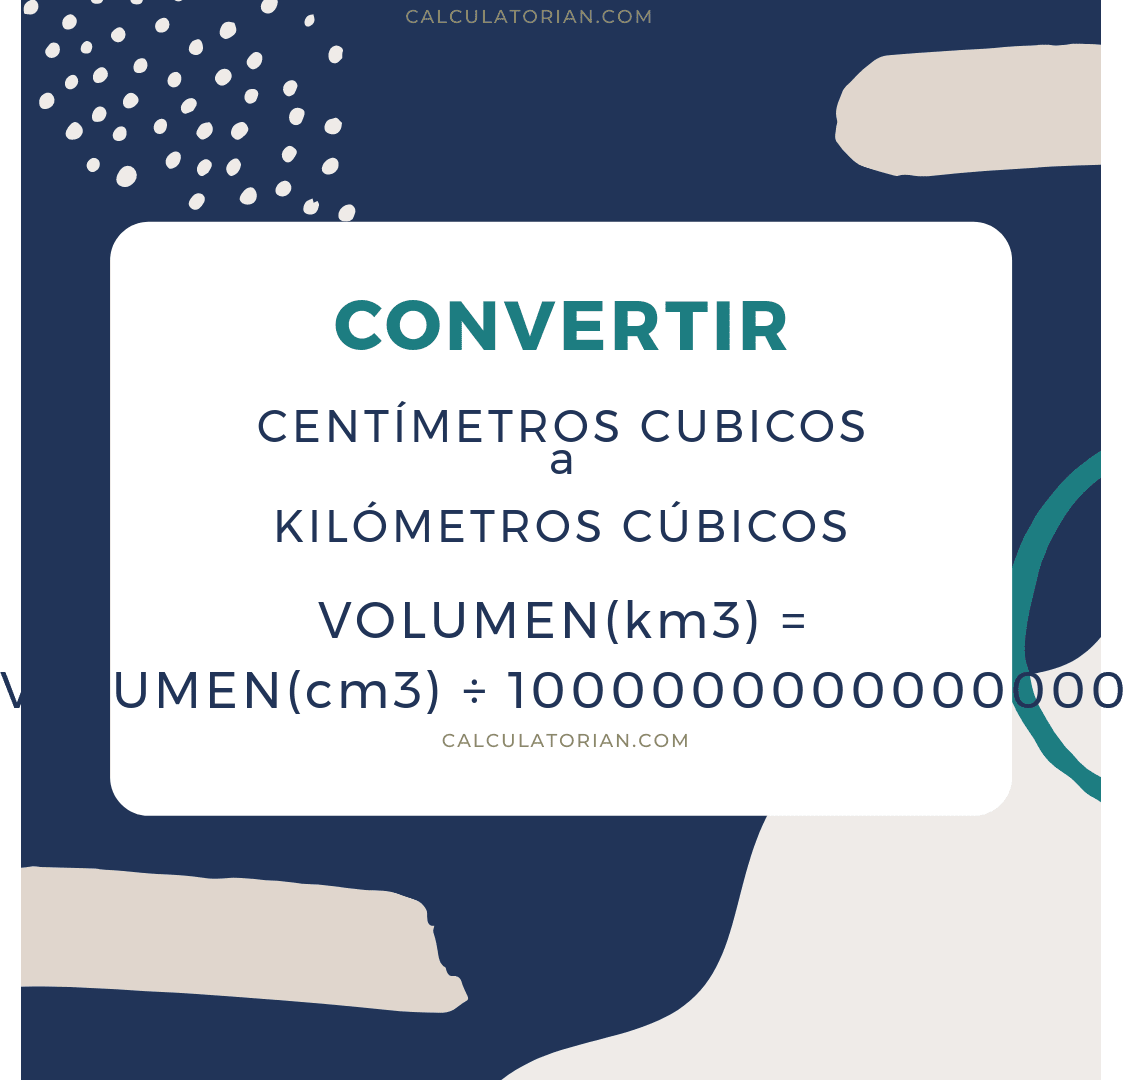 La fórmula para convertir volume de Centímetros cubicos a Kilómetros cúbicos